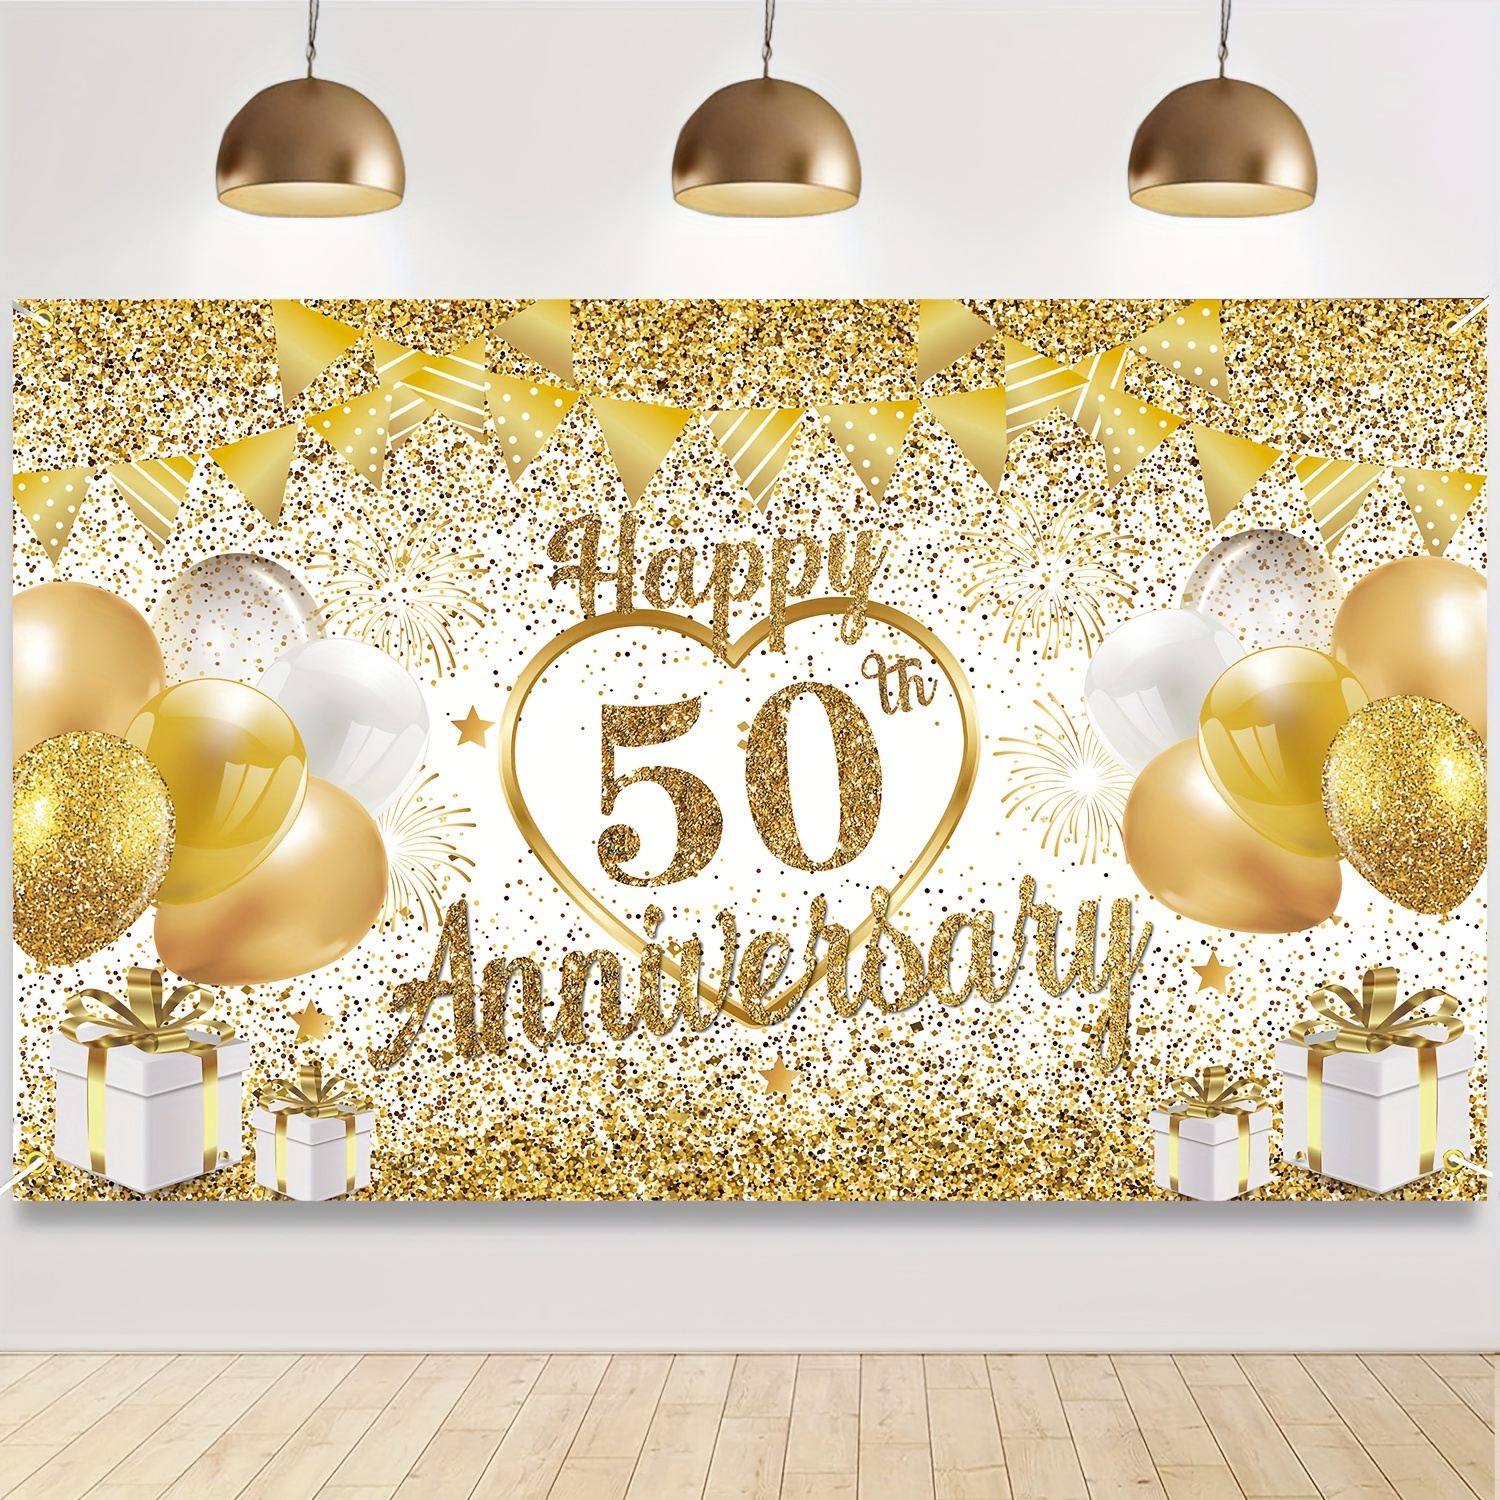 Honatrv Photocall Bodas de Oro 50 Aniversario, Pancartas para 50  Aniversario de Boda, Decoración de Fiesta de Oro Negro de 50 Aniversario,  180 x 115